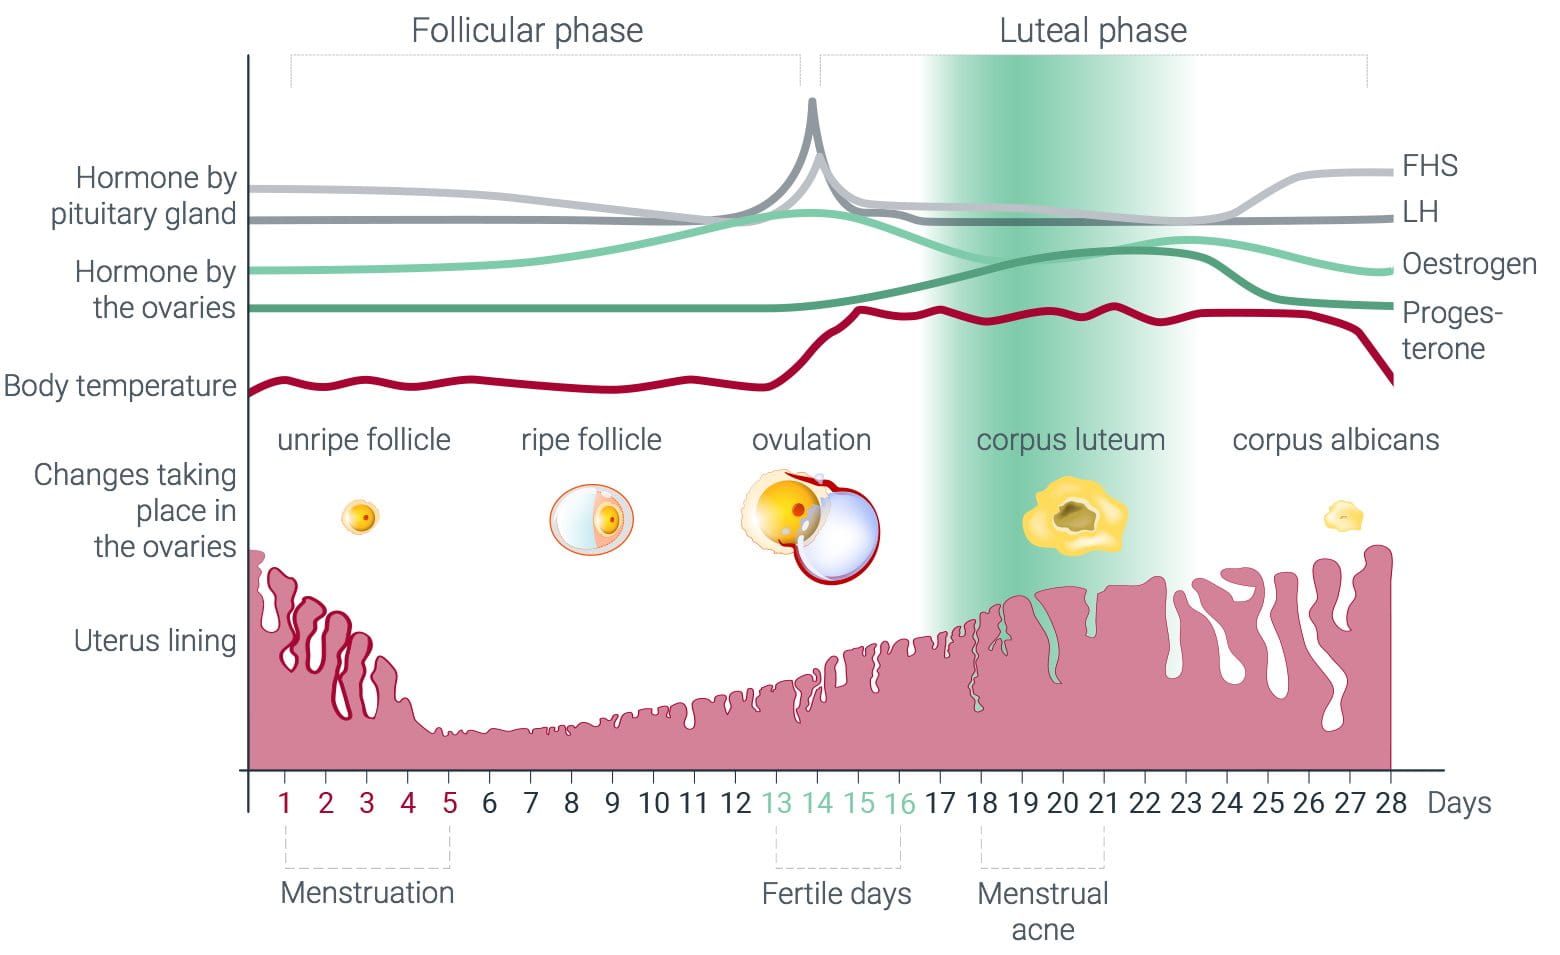 Schaubild des Menstruationszyklus mit hormonellen Schwankungen und Auswirkungen auf den Körper, wie dem Auftreten von Menstruations-Akne an Tag 18 bis 21. 